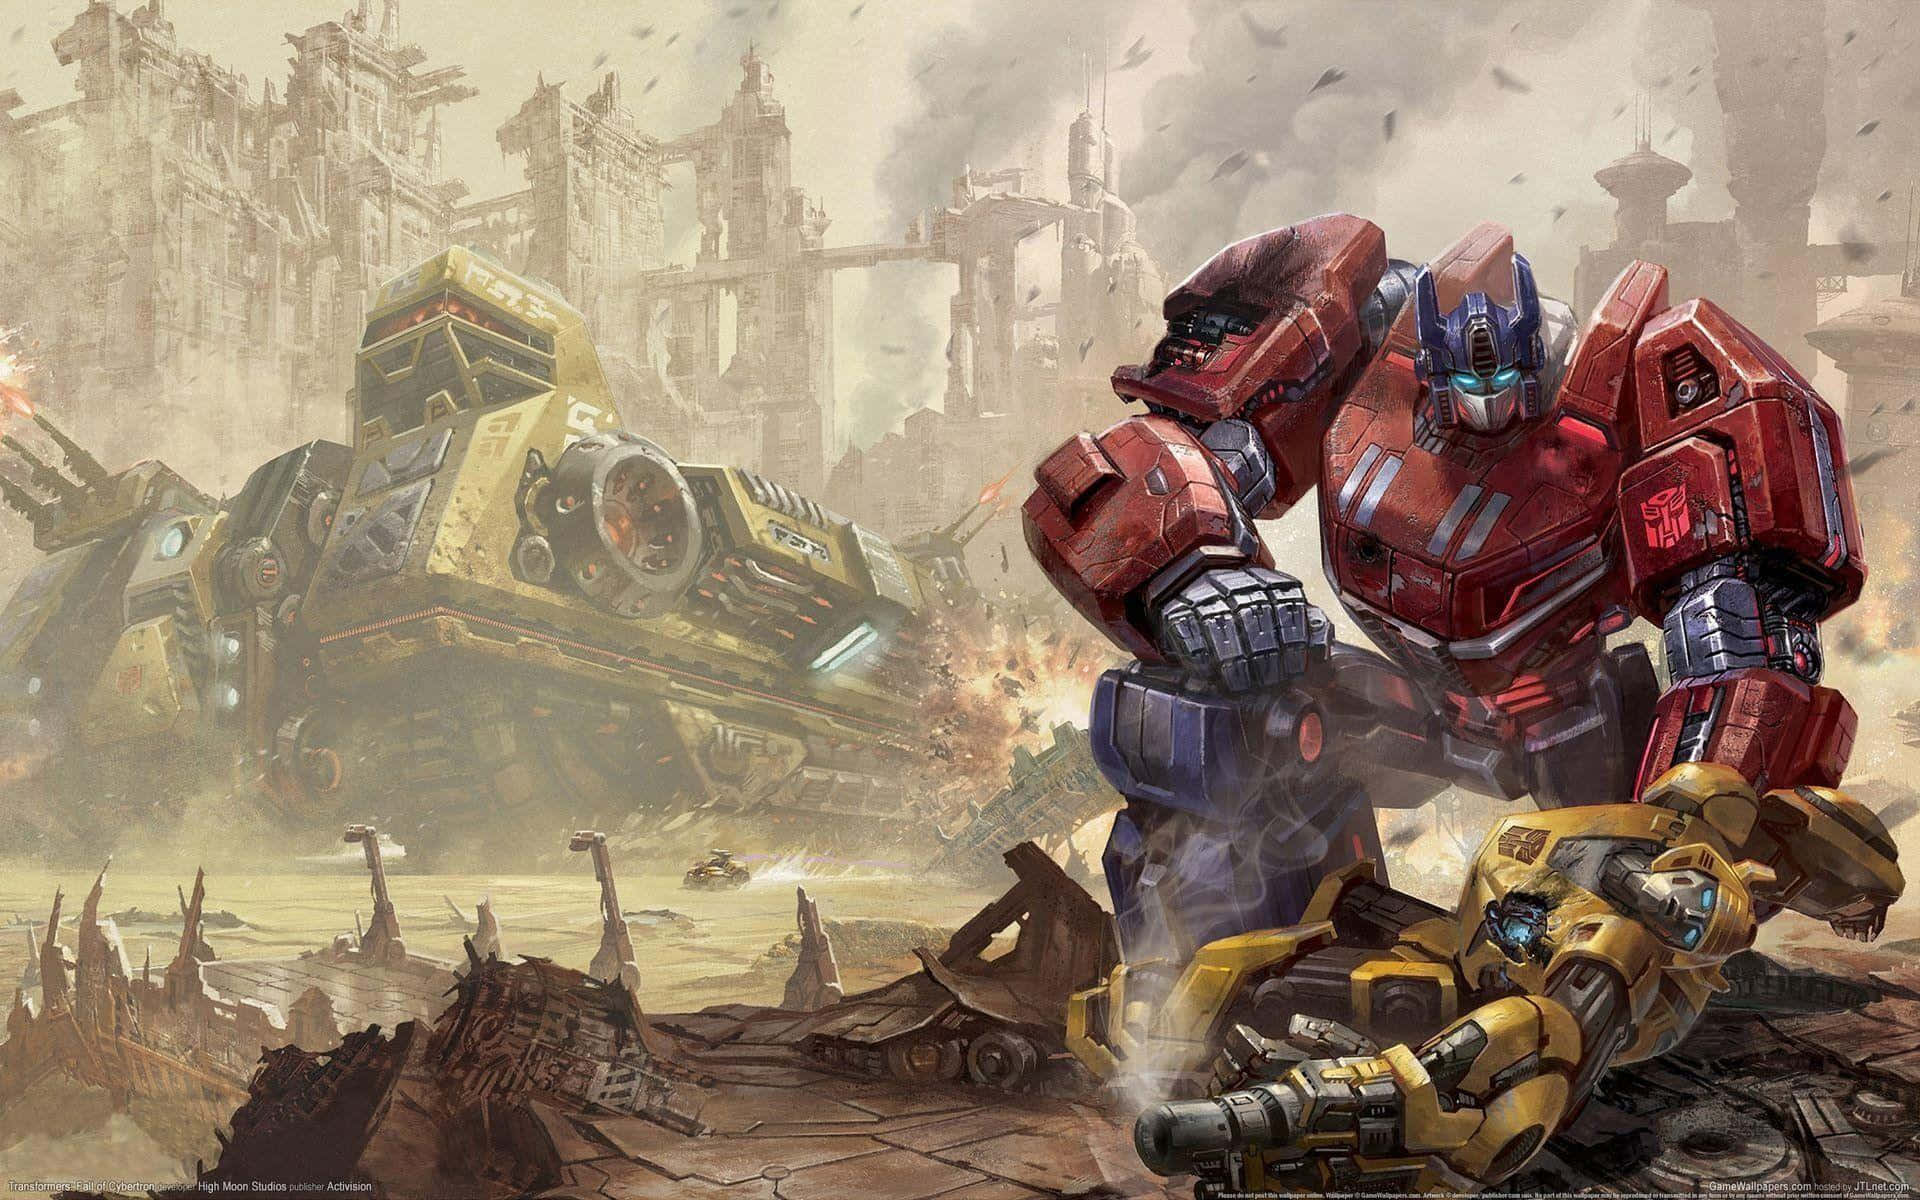 Machdich Bereit Für Das Größte Abenteuer, Denn Bumblebee Von Transformers Stößt In Den Kampf Dazu! Wallpaper